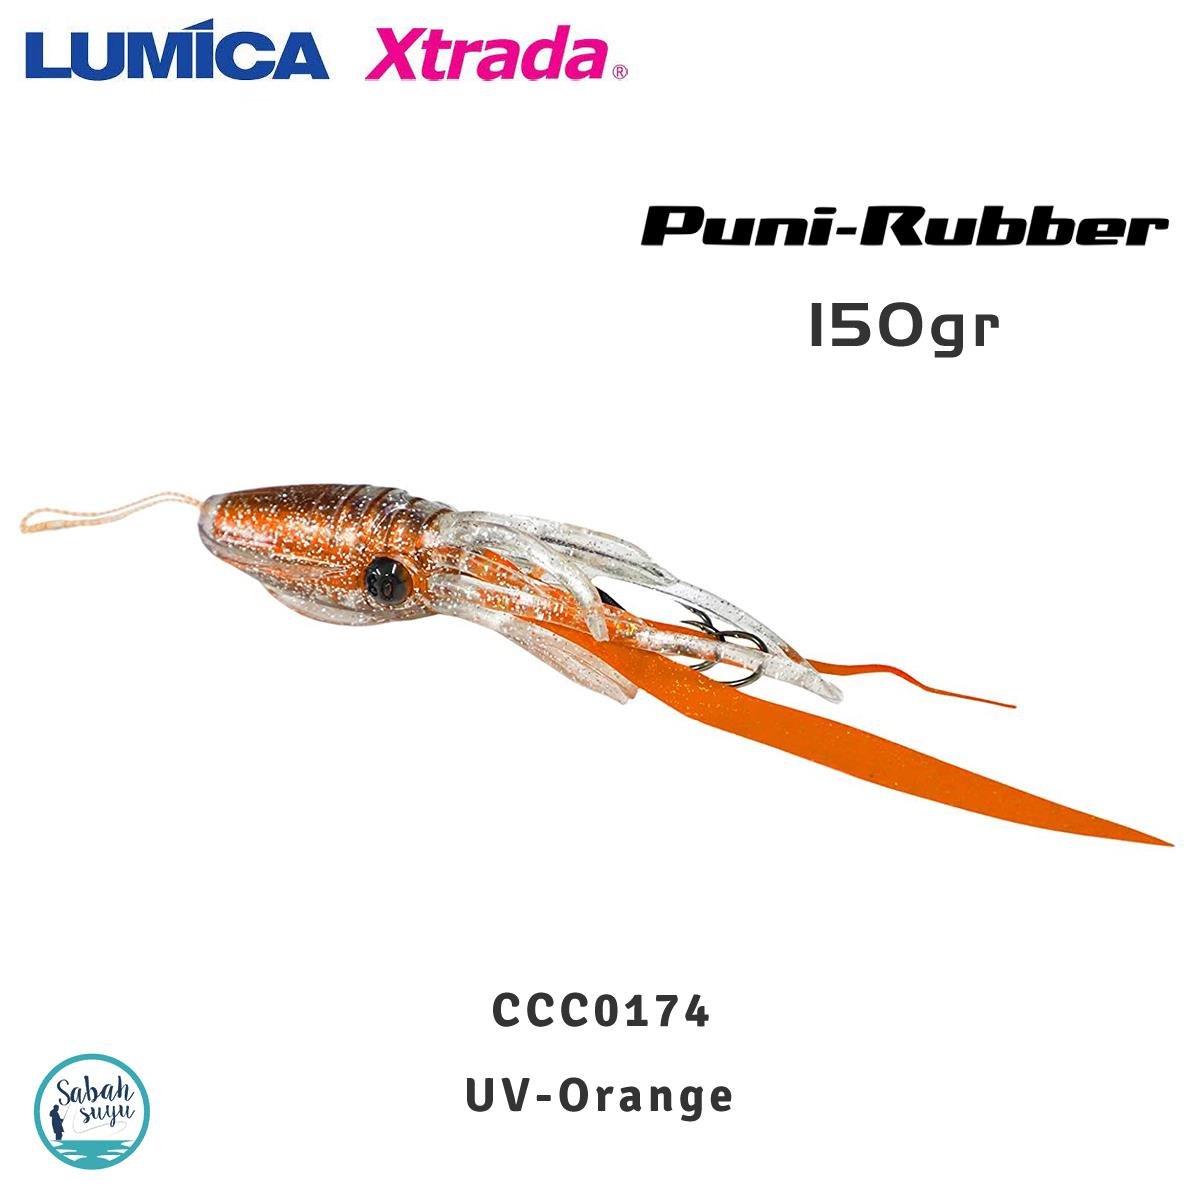 Lumica Xtrada Puni Rubber Tai Rubber Slider 150gr. C00174 UV Orange